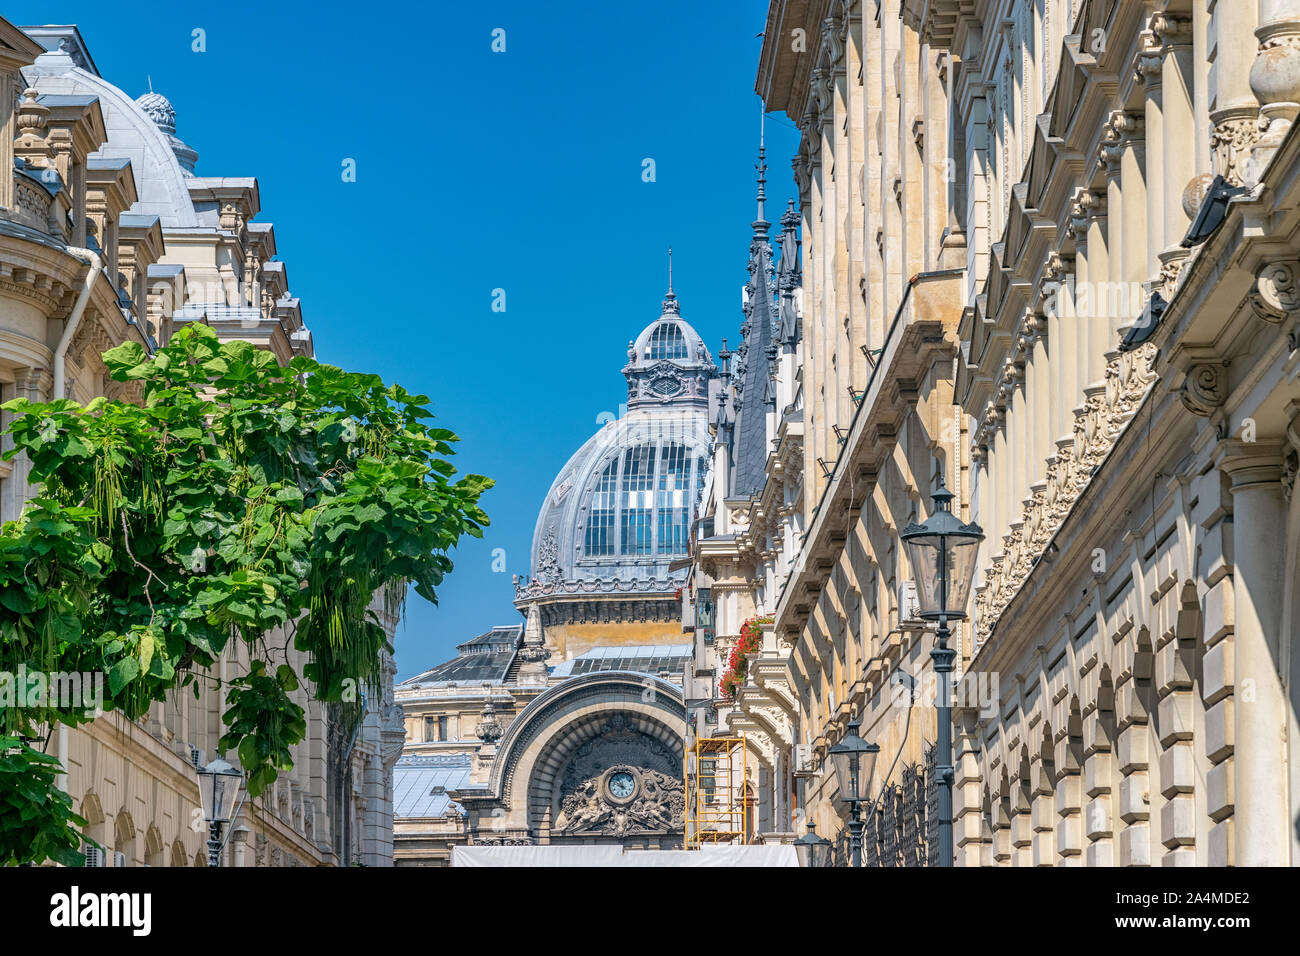 Palacio de la construcción de depósitos y consignaciones en Bucarest, Rumania. Palacio de la CCA en un día soleado de verano con un cielo azul en Bucarest, Rumania. Foto de stock